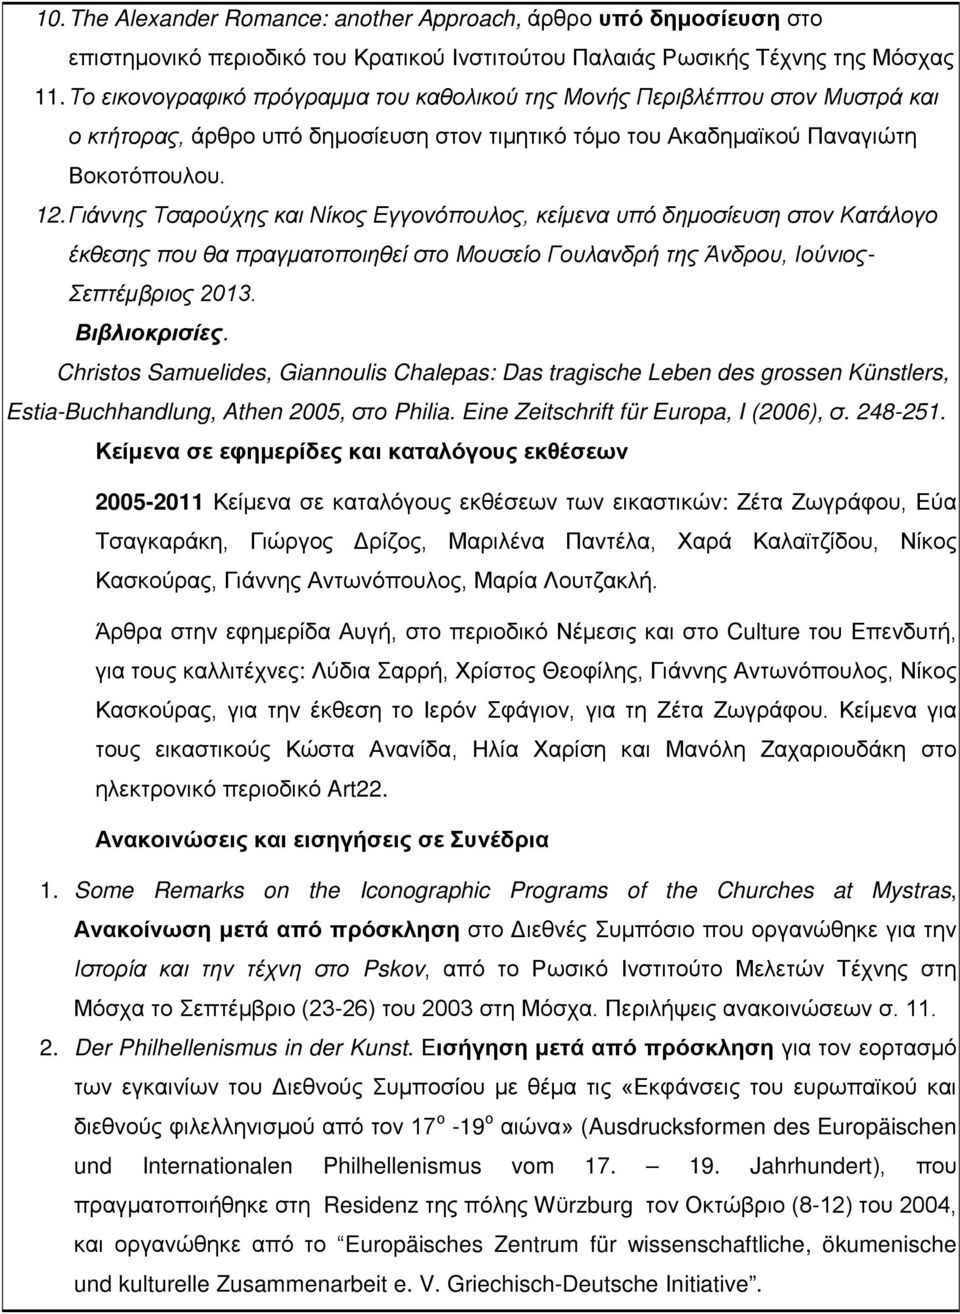 Γιάννης Τσαρούχης και Νίκος Εγγονόπουλος, κείμενα υπό δημοσίευση στον Κατάλογο έκθεσης που θα πραγματοποιηθεί στο Μουσείο Γουλανδρή της Άνδρου, Ιούνιος- Σεπτέμβριος 2013. Βιβλιοκρισίες.